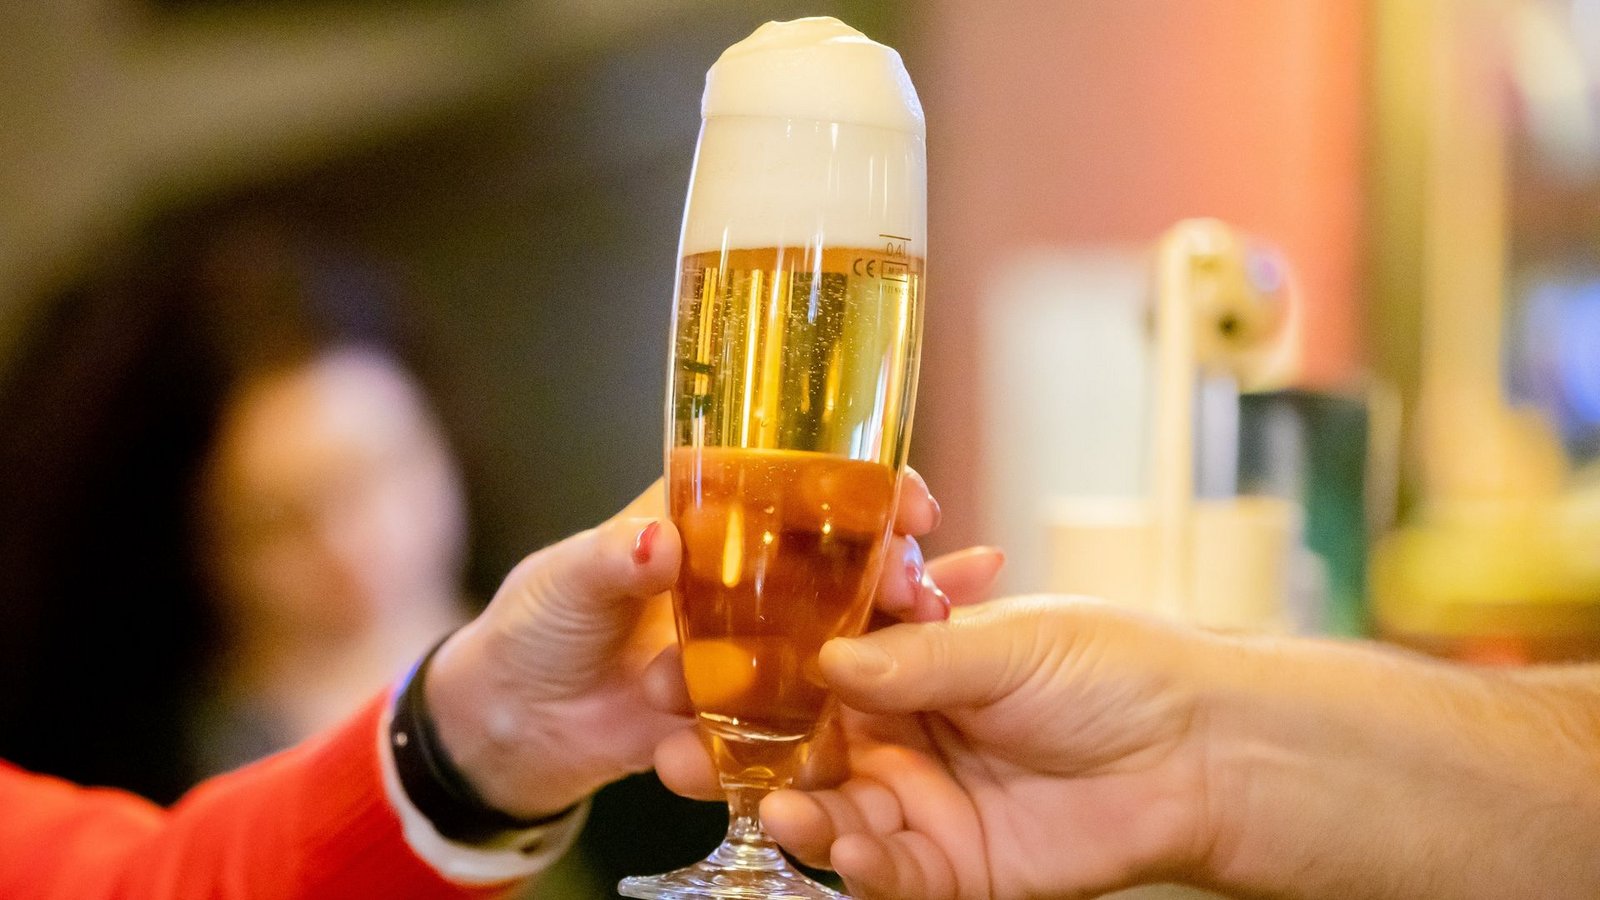 Der Bierabsatz in Deutschland ist nach den Corona-Jahren wieder leicht gestiegen.Foto: Christoph Soeder/dpa